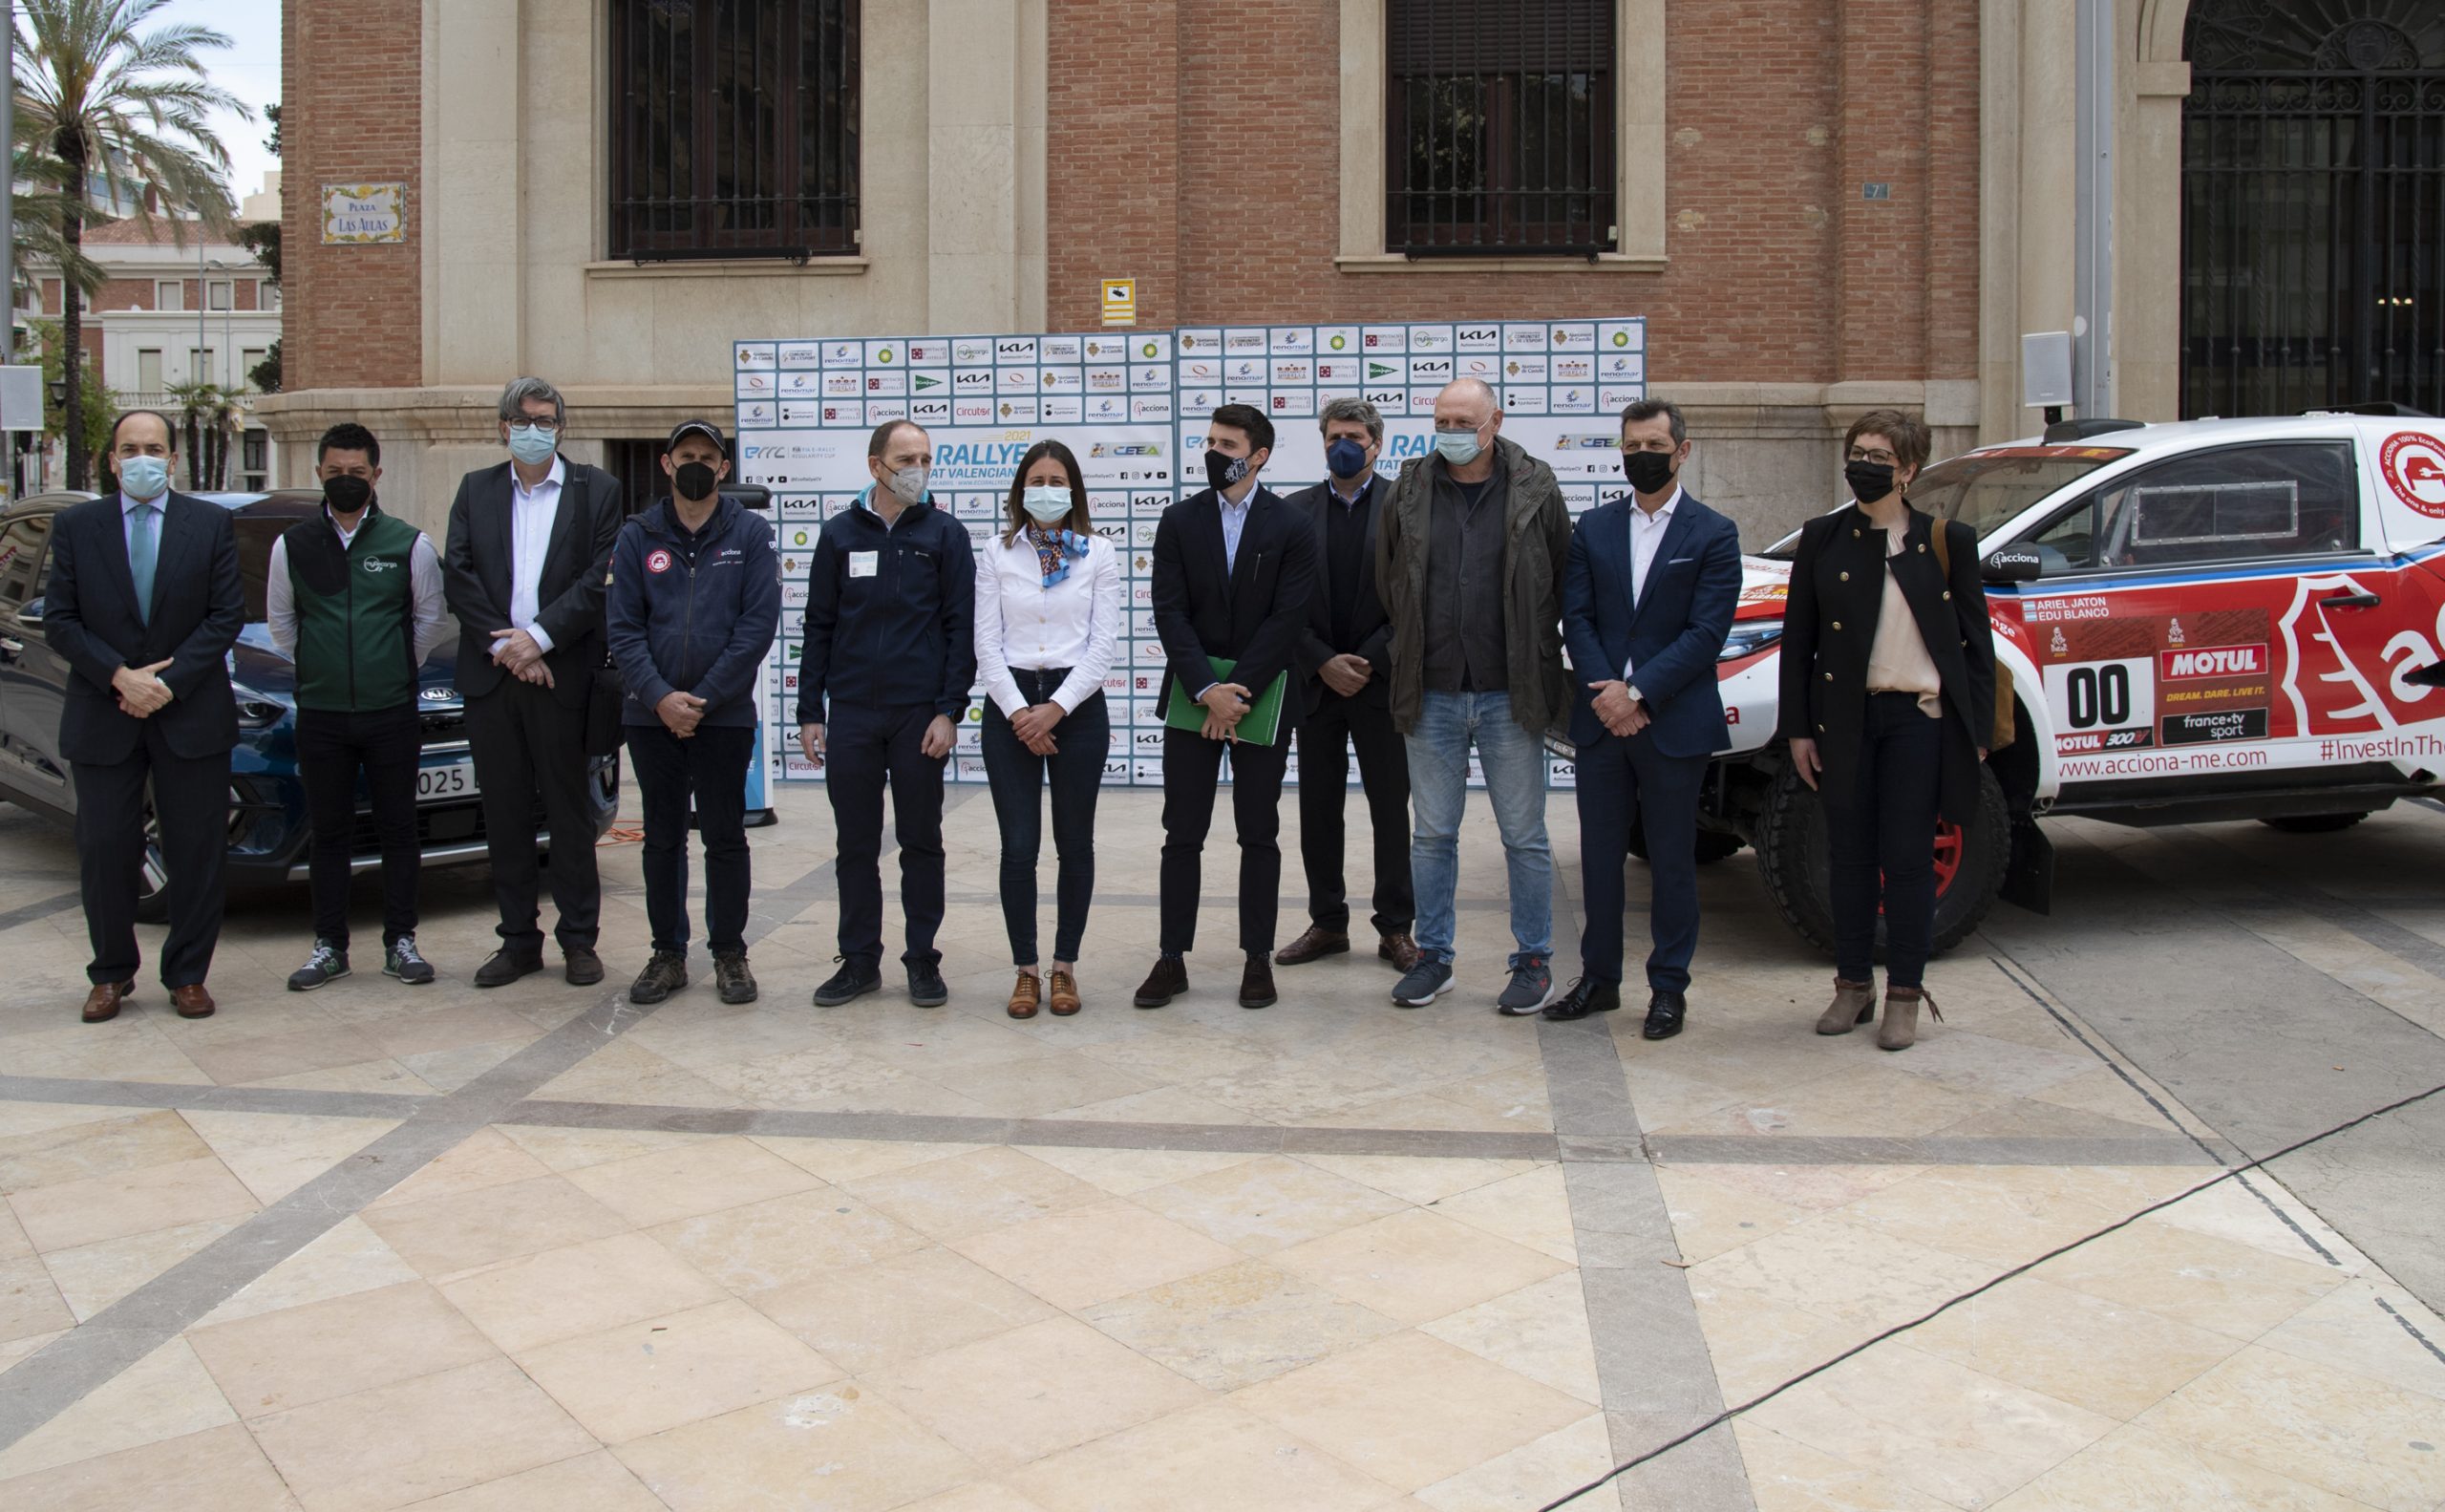 La Diputación de Castellón renueva su apuesta por las carreras ecosostenibles en la provincia con el apoyo al ECO Rallye Comunitat Valenciana